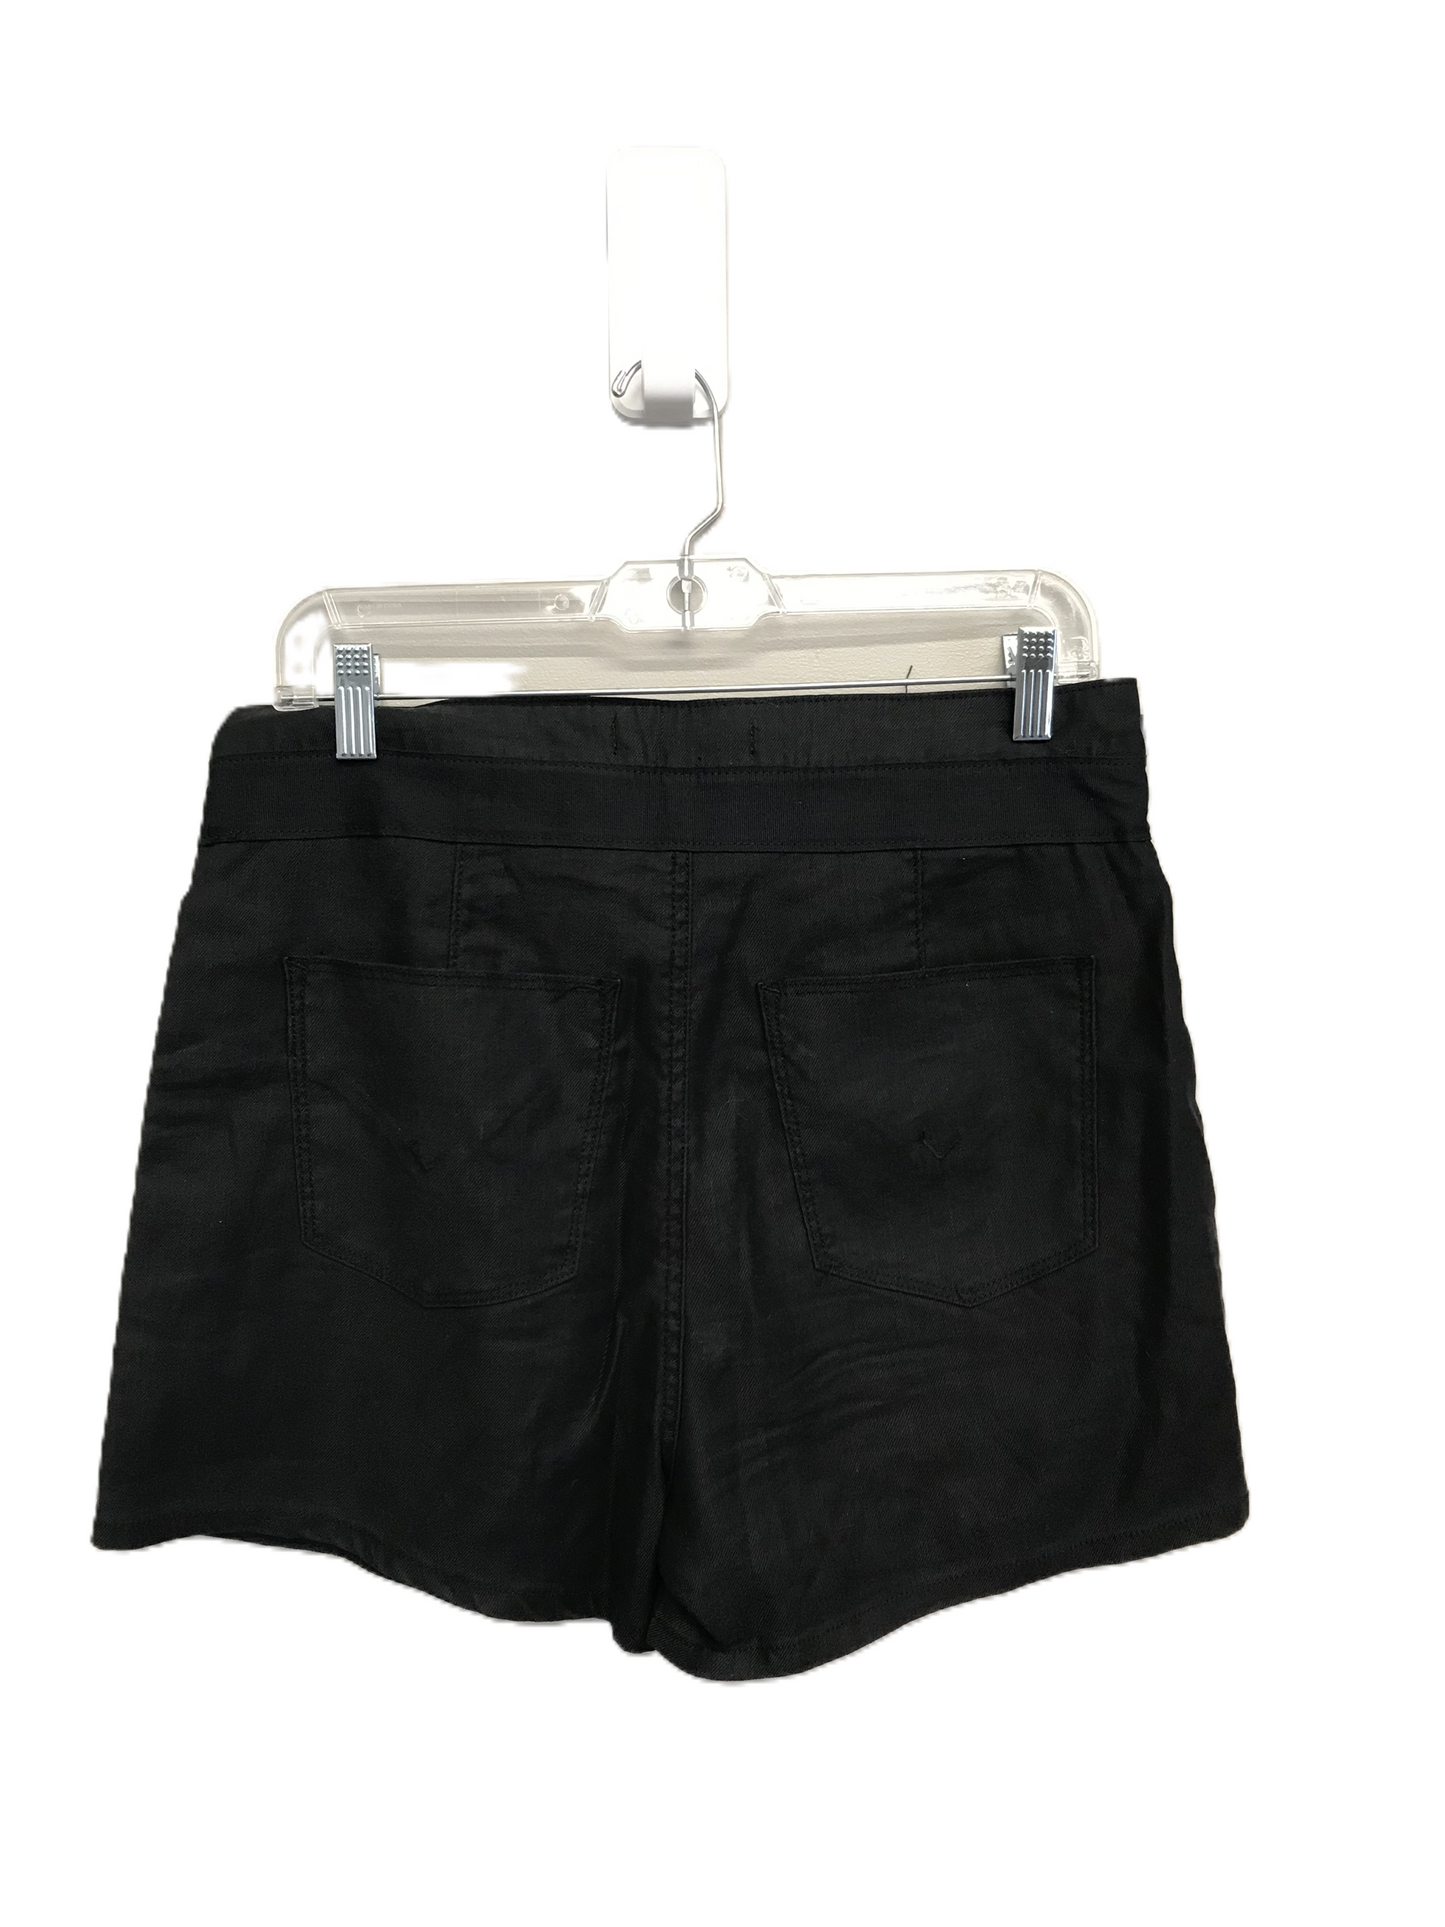 Black Shorts Designer By Hudson, Size: 0